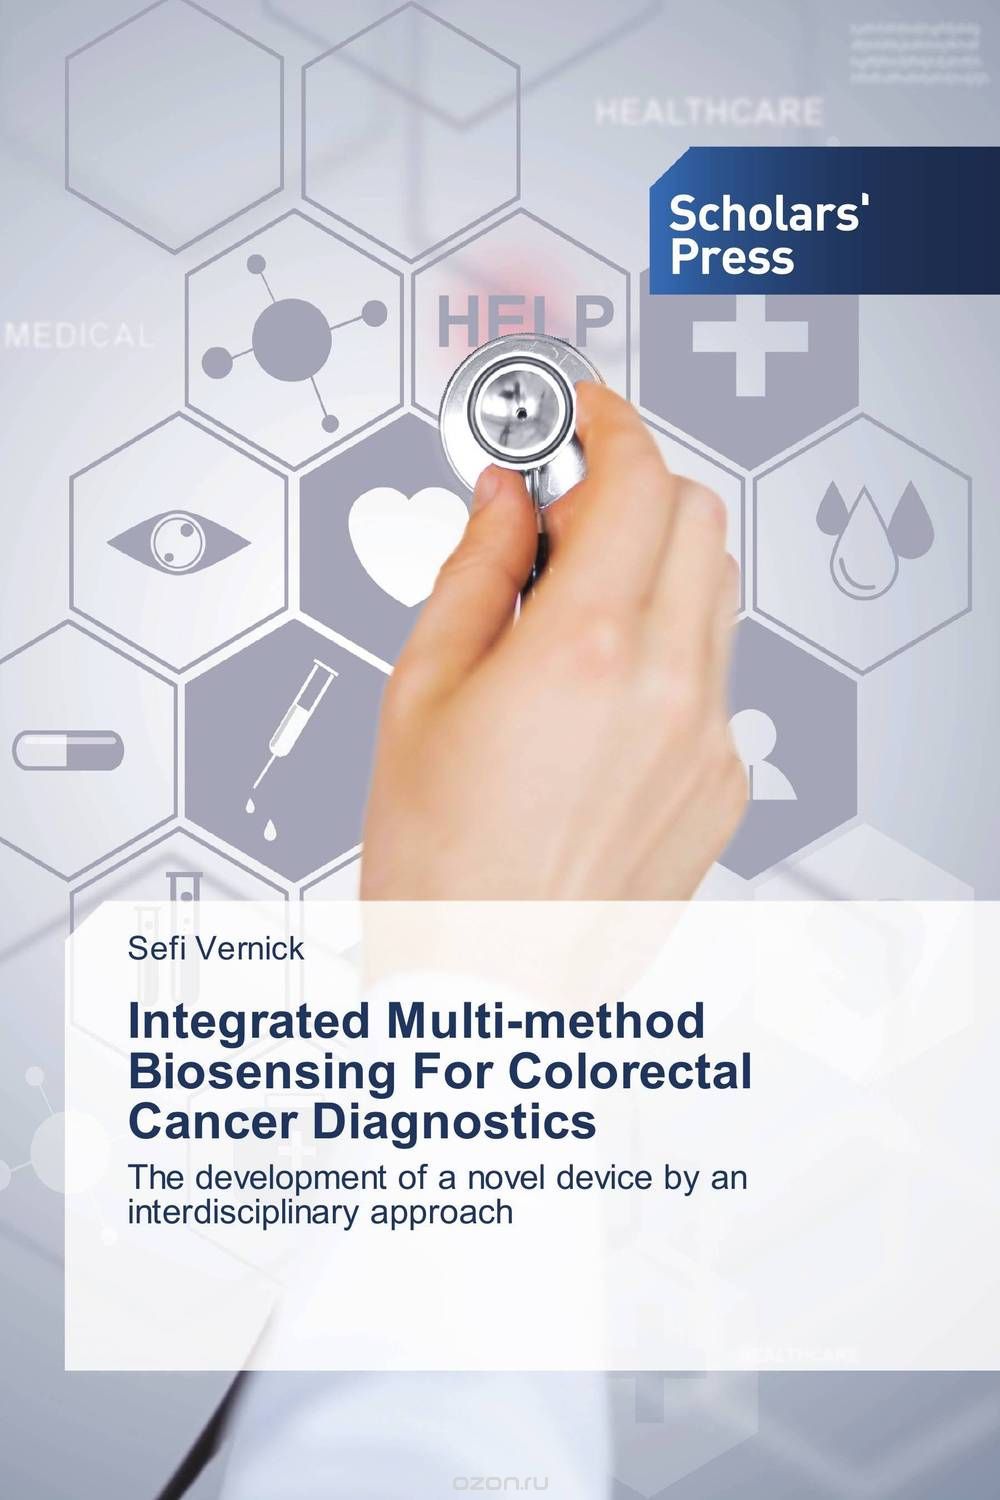 Скачать книгу "Integrated Multi-method Biosensing For Colorectal Cancer Diagnostics"